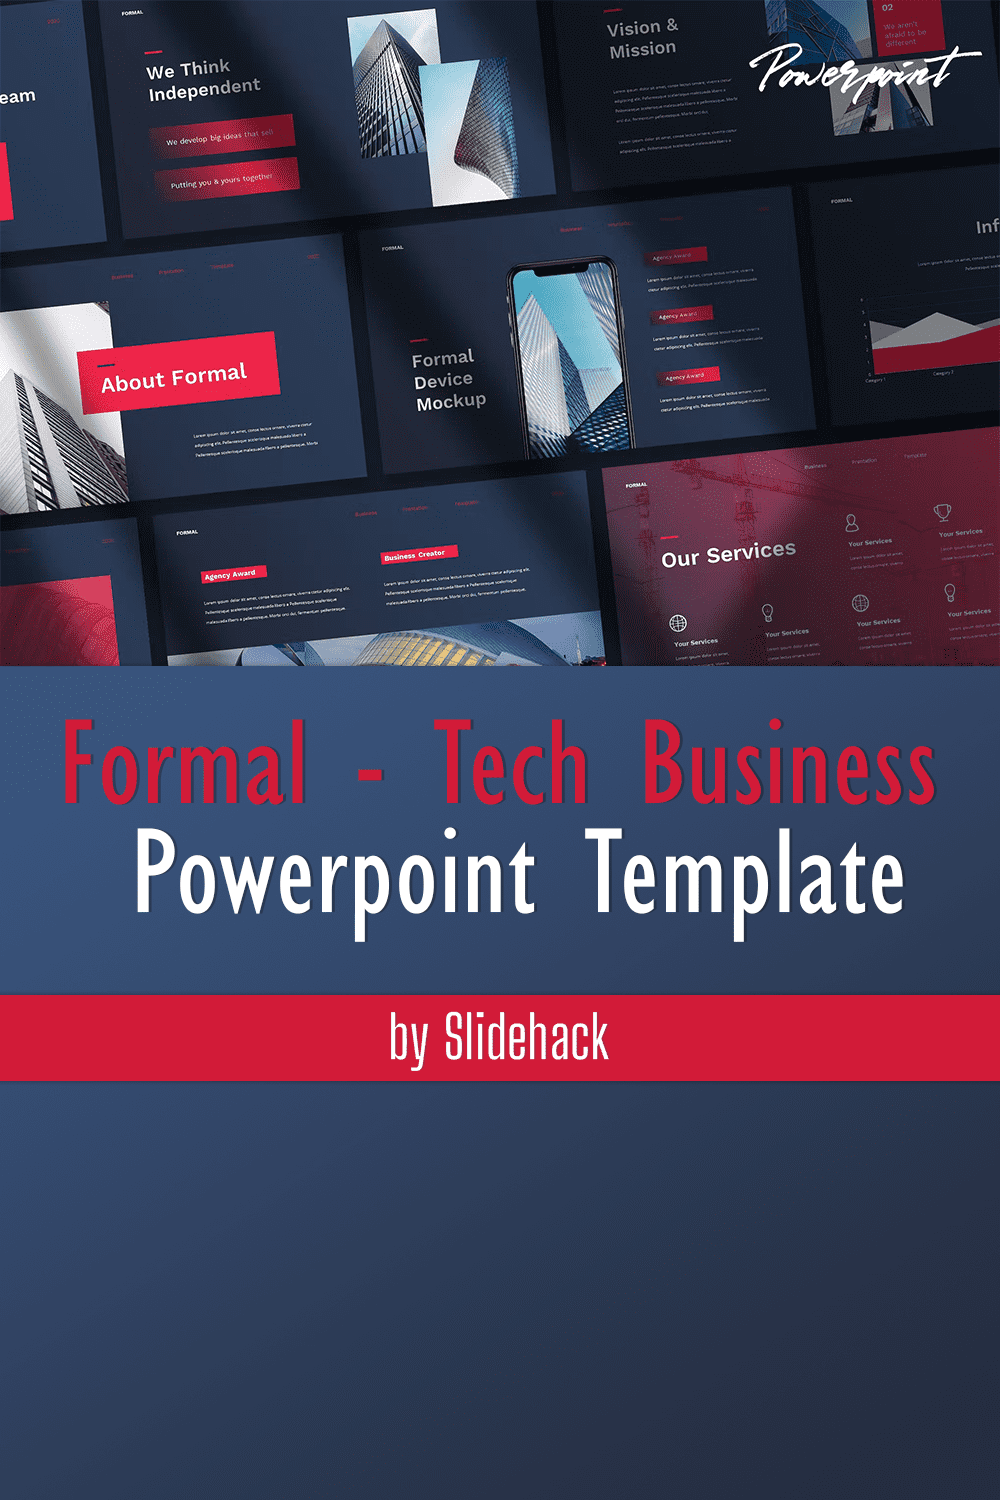 Formal - Tech Business PowerPoint Template - Pinterest.